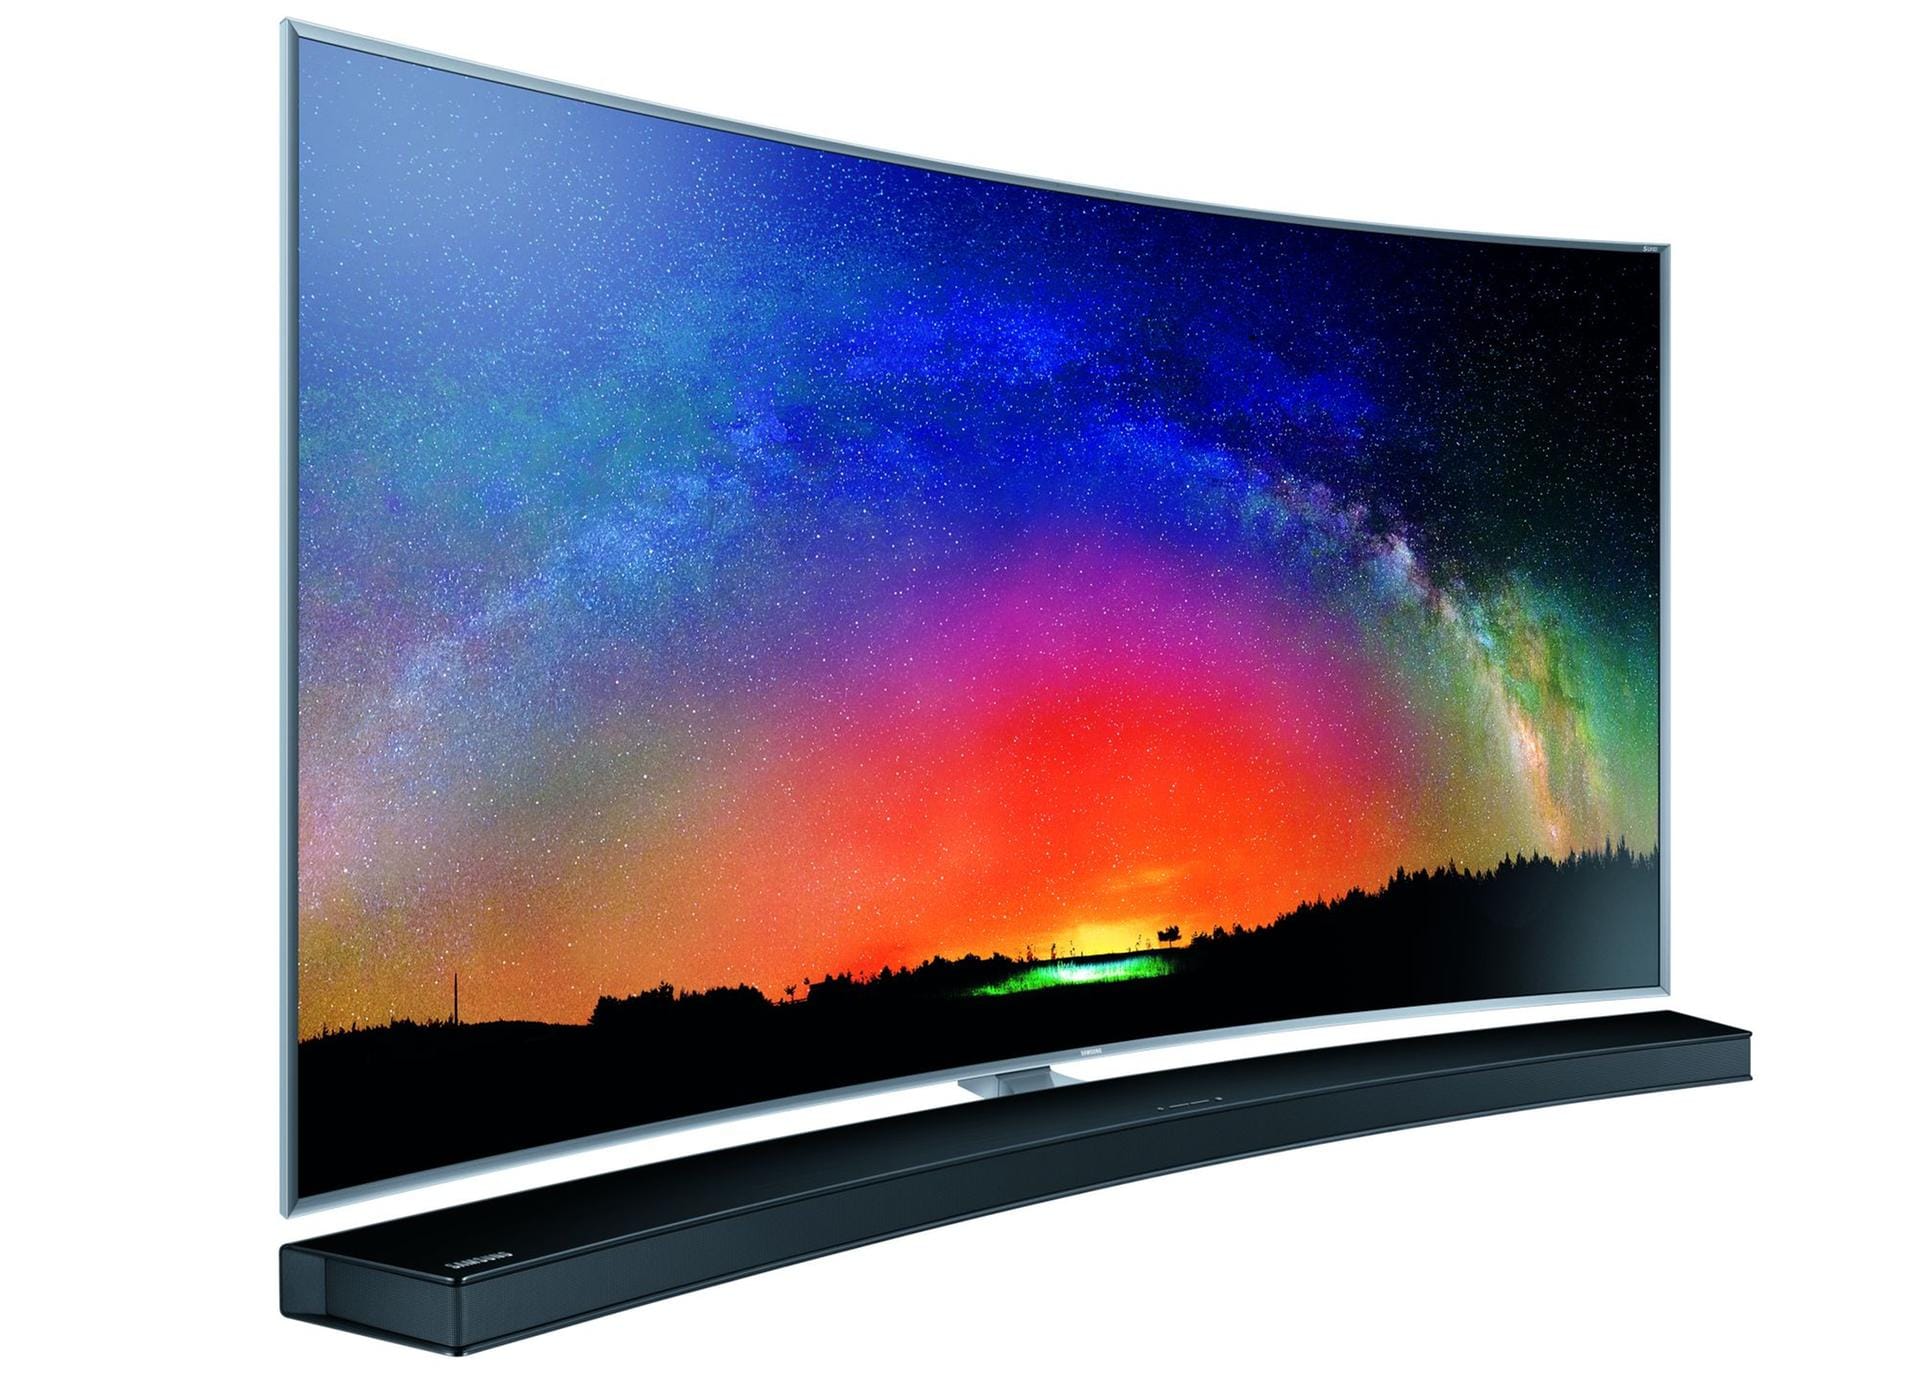 Wenn beim TV-Ton nachgeholfen werden muss, wäre aus Samsungs Sicht die Soundbar HW-J8500 eine gute Wahl.